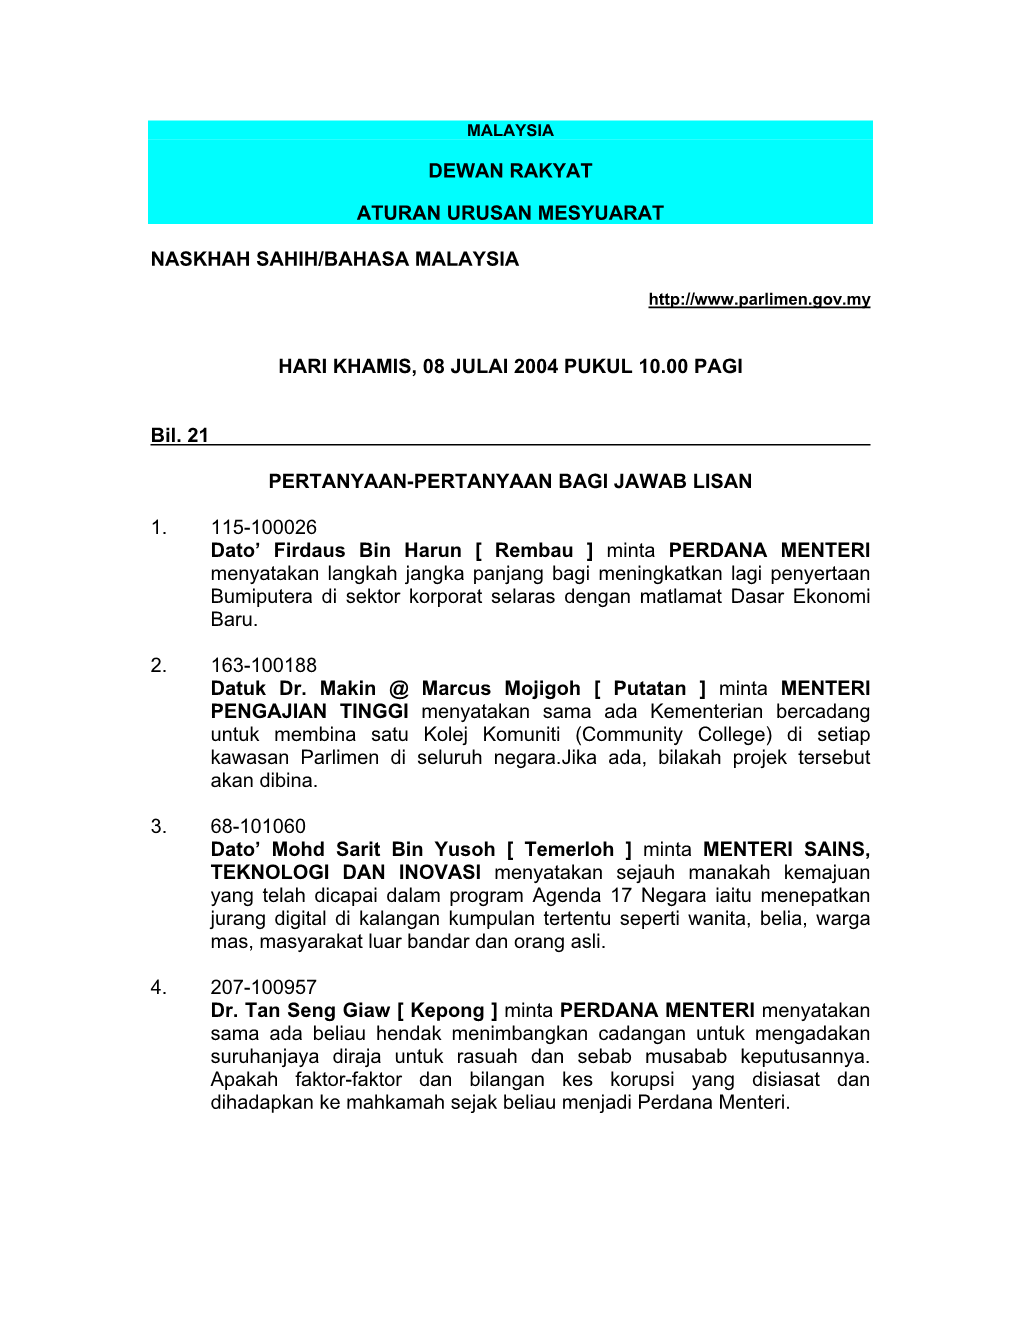 DEWAN RAKYAT ATURAN URUSAN MESYUARAT NASKHAH SAHIH/BAHASA MALAYSIA HARI KHAMIS, 08 JULAI 2004 PUKUL 10.00 PAGI Bil. 21 PERTANYAA